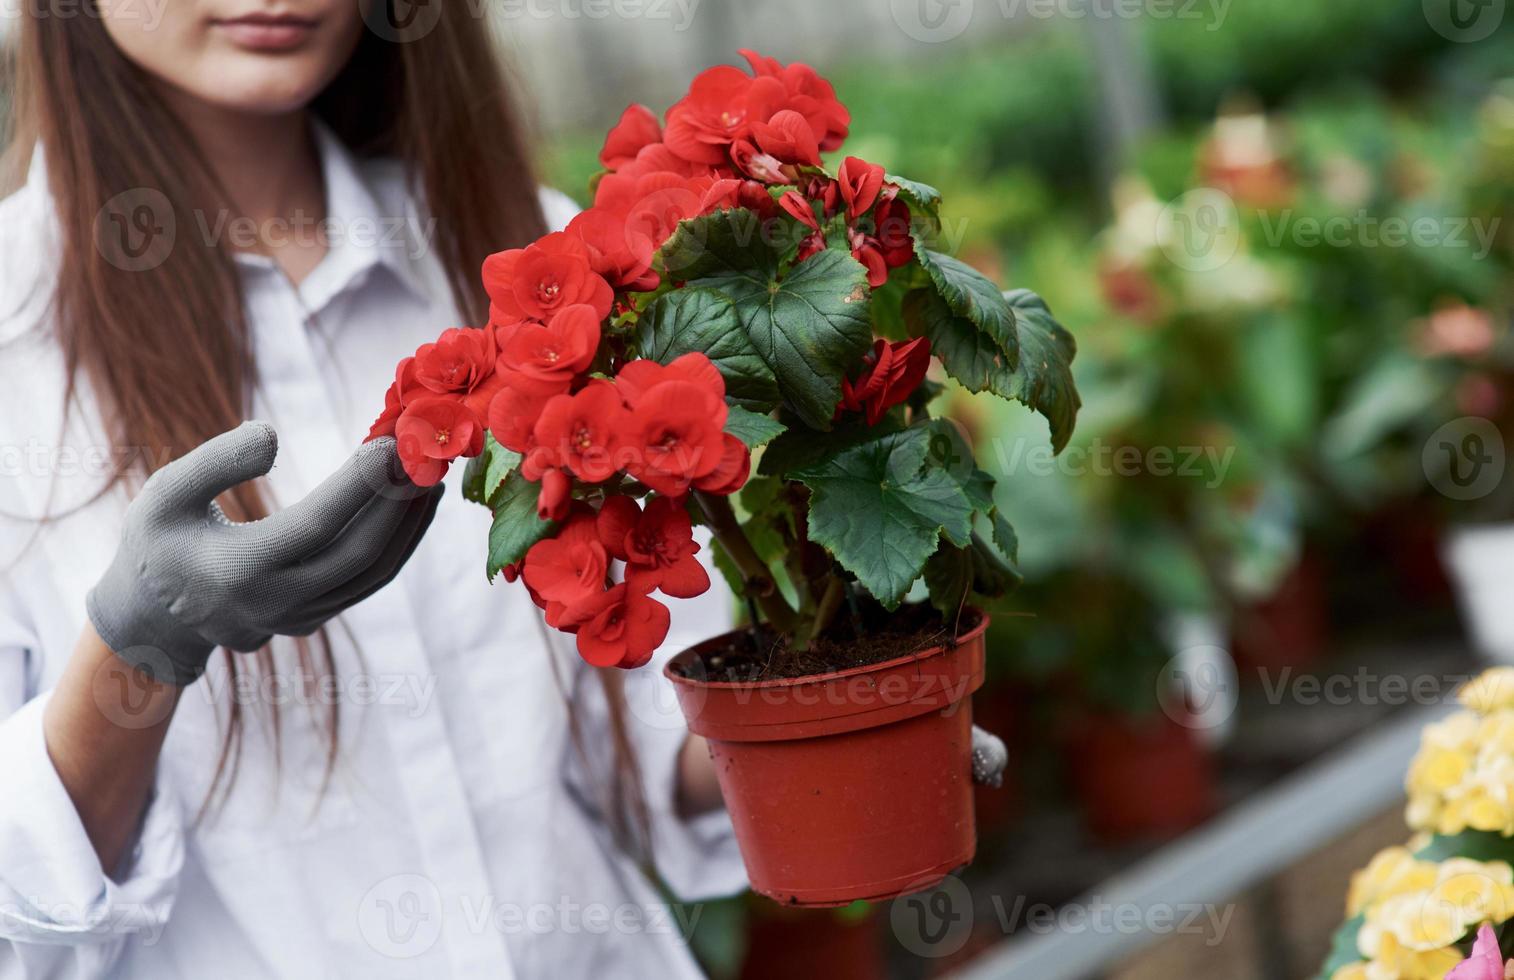 de plant laten zien. meisje met handschoenen aan haar handen met pot met rode bloemen foto